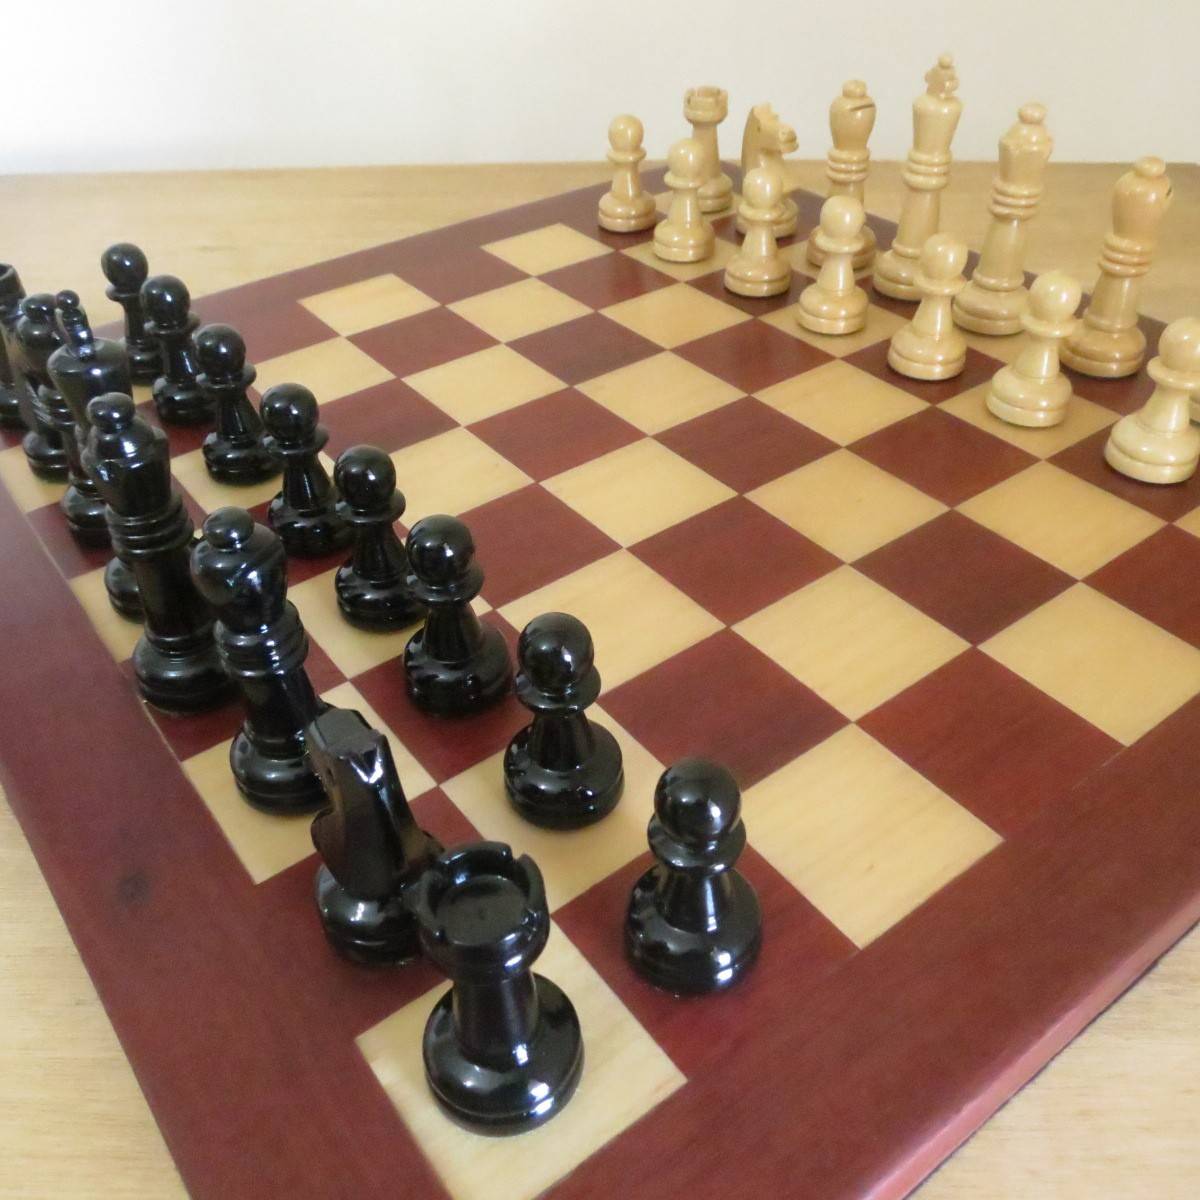 48 melhor ideia de Xadrez jogo  xadrez jogo, xadrez, peças de xadrez